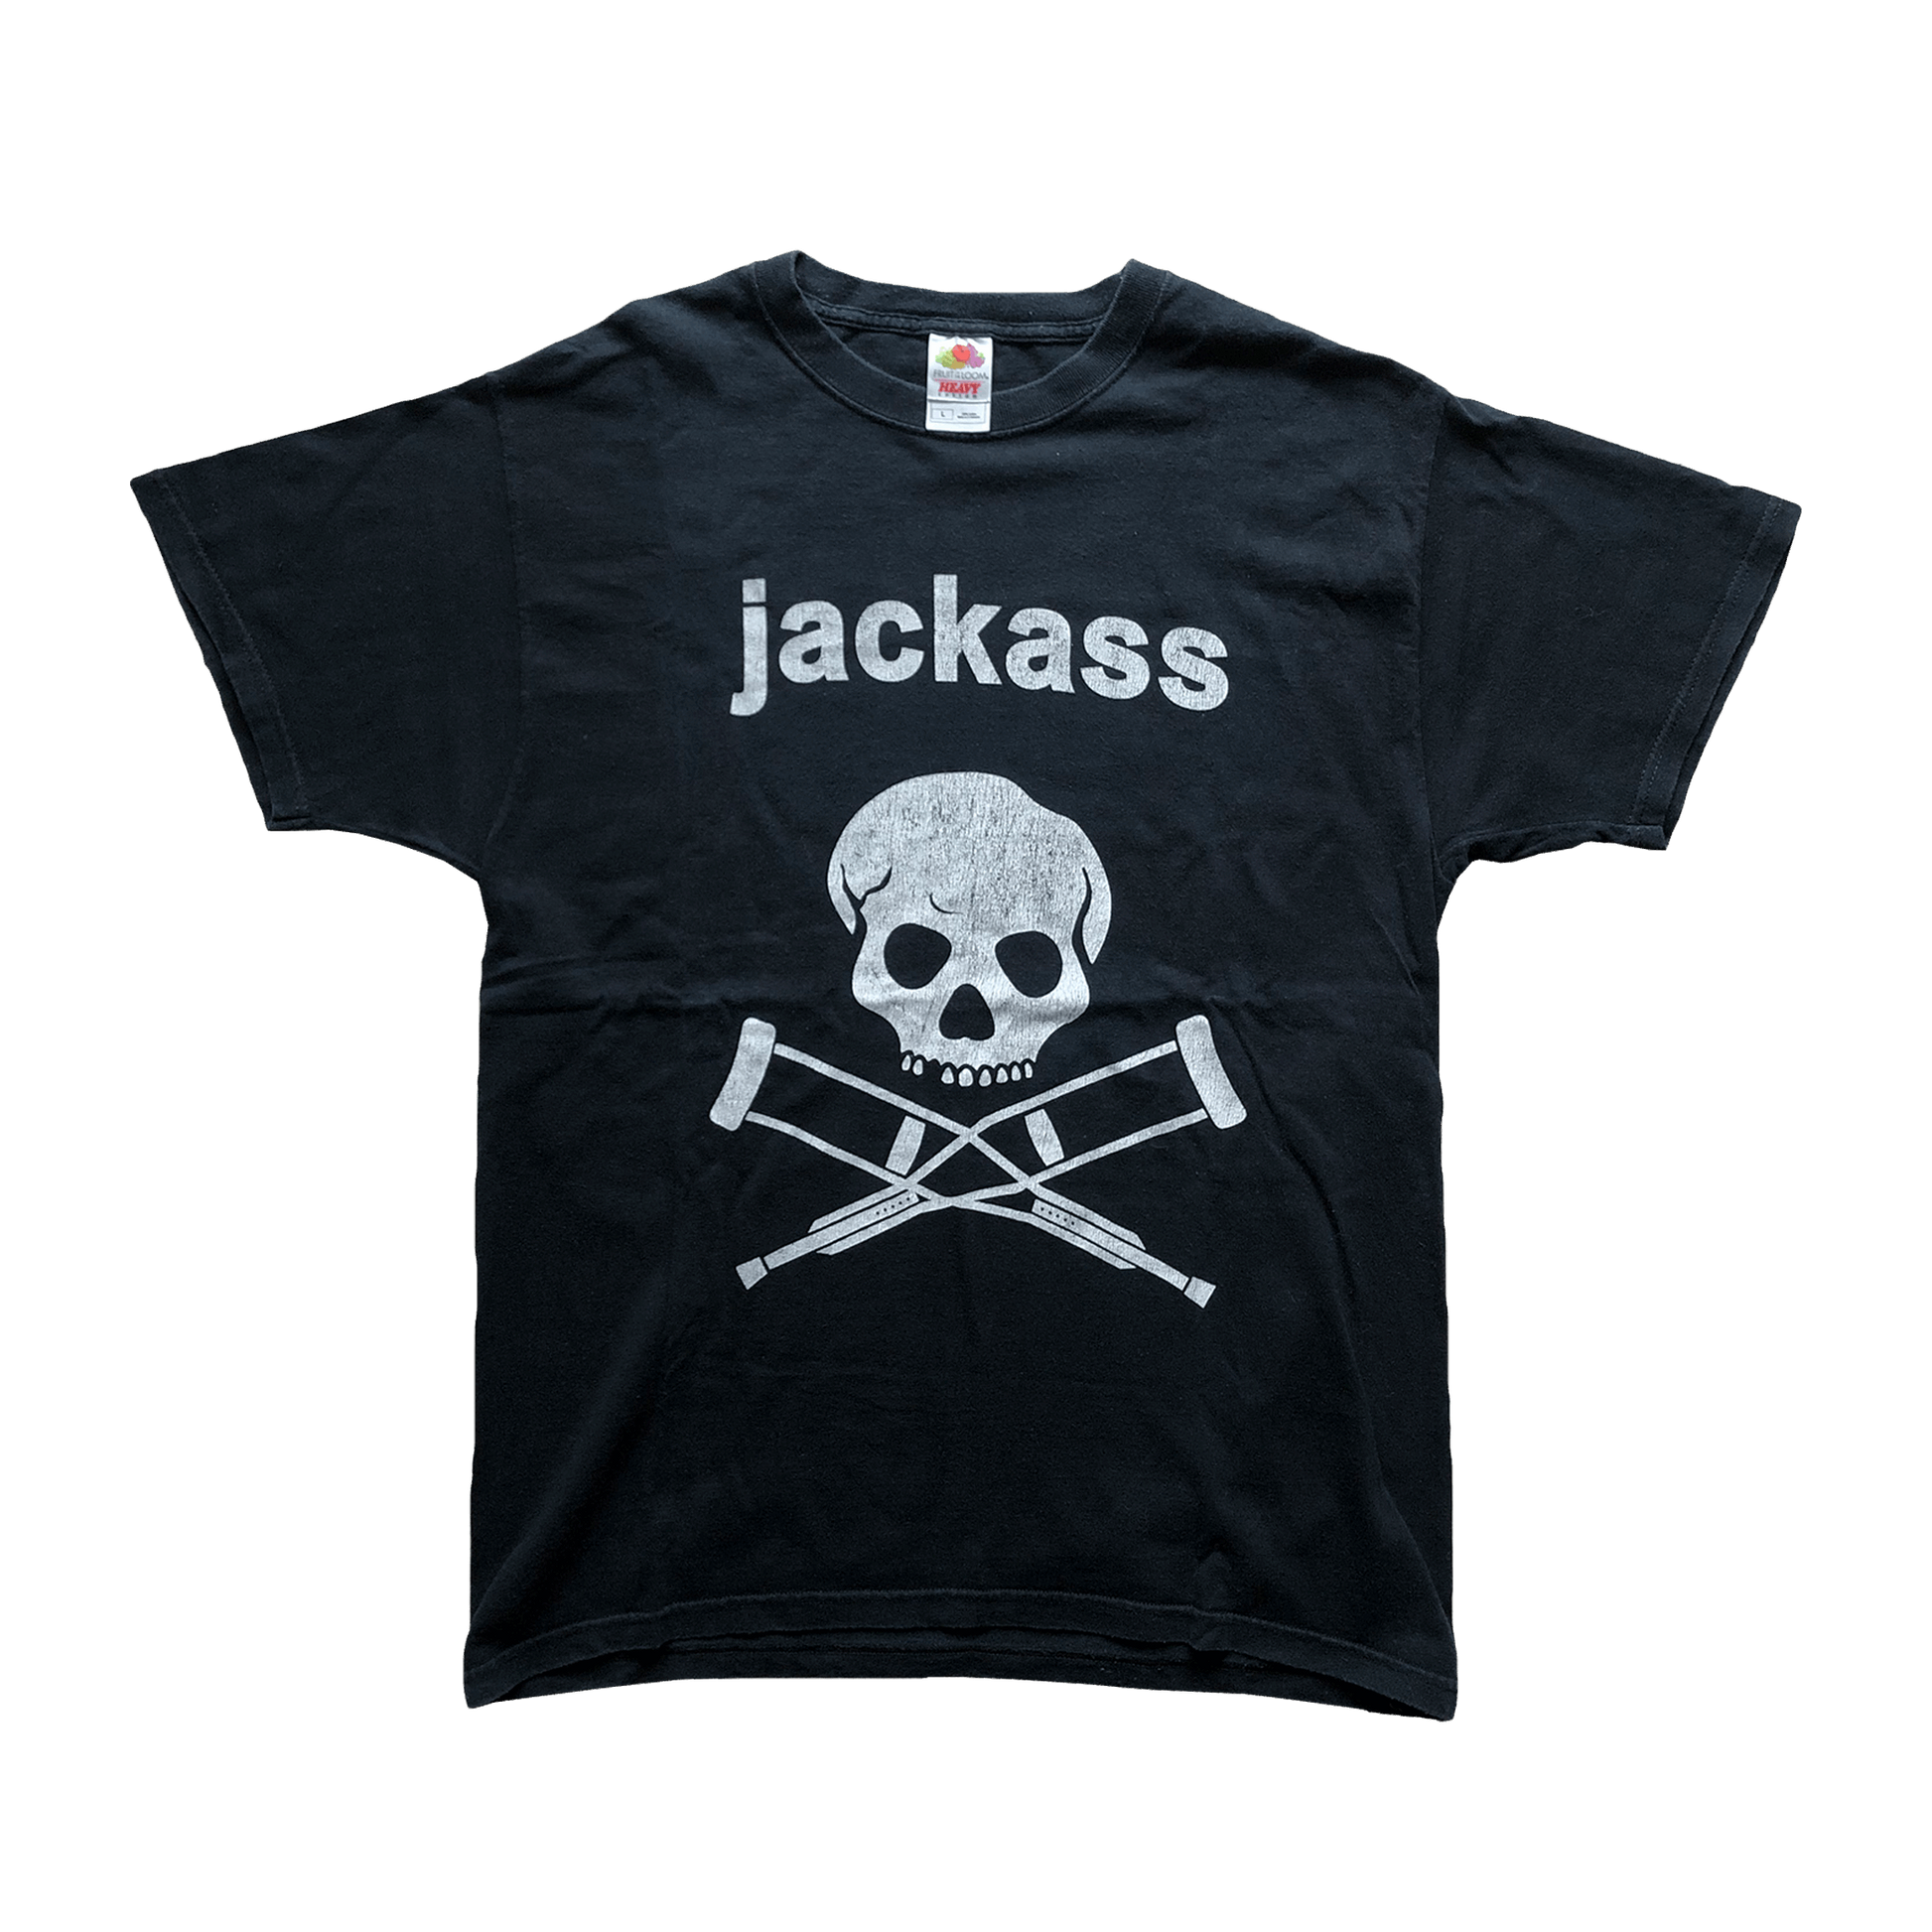 Jackass Official 2004